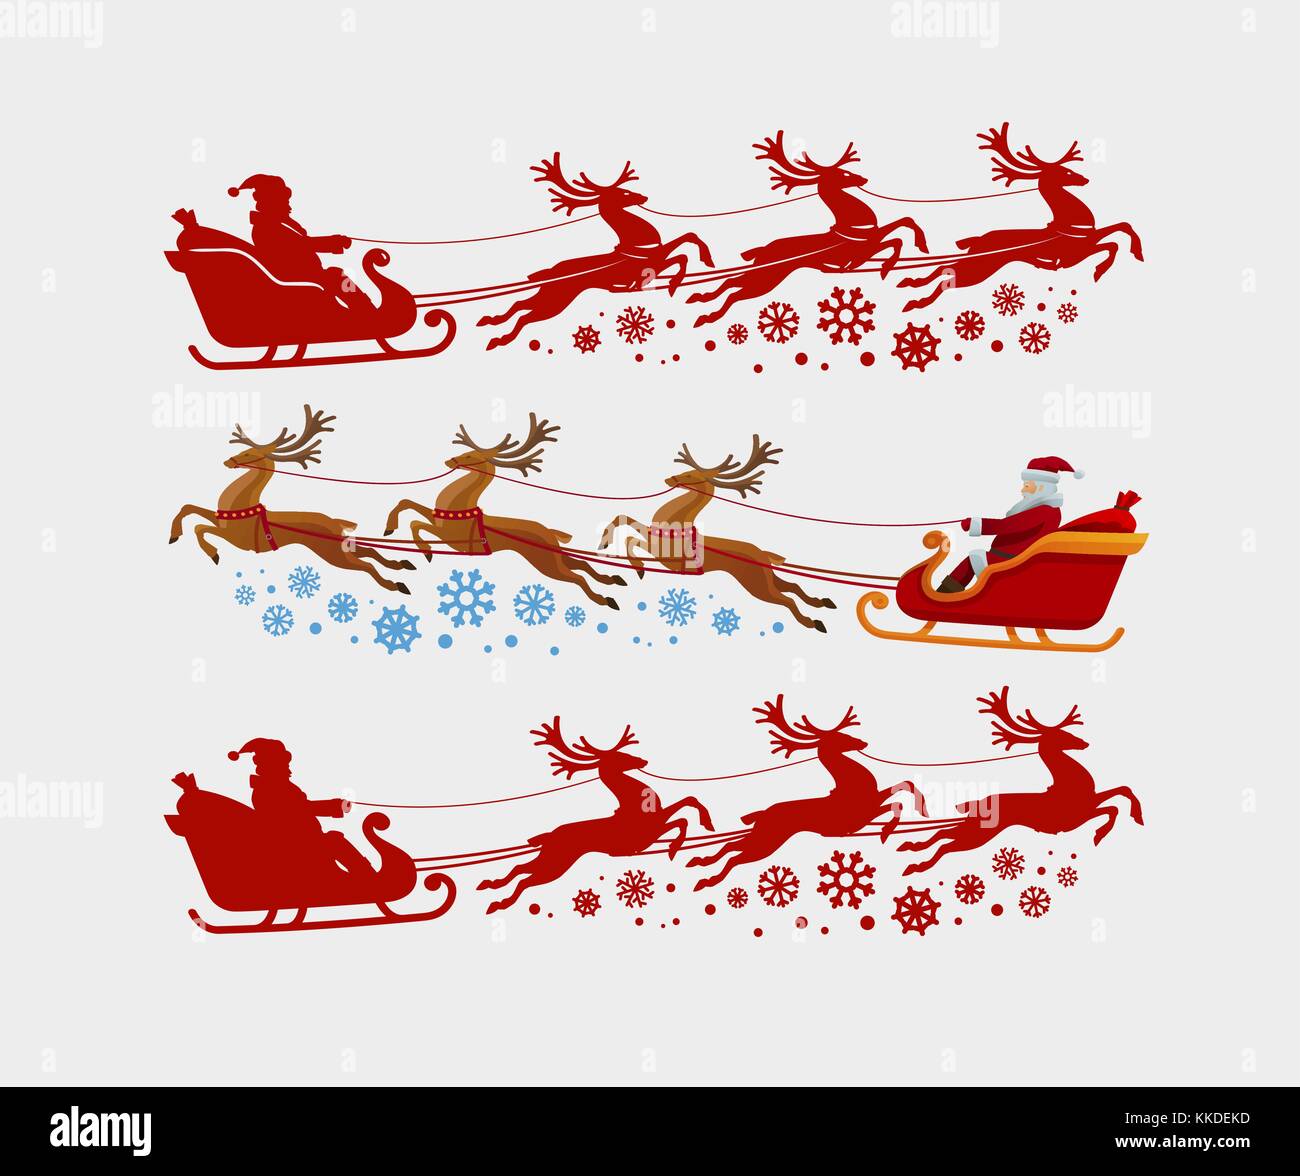 Der Weihnachtsmann fährt im Schlitten, gezogen von Rentieren. Weihnachten, Weihnachtskonzept. Silhouettenvektor-Illustration Stock Vektor